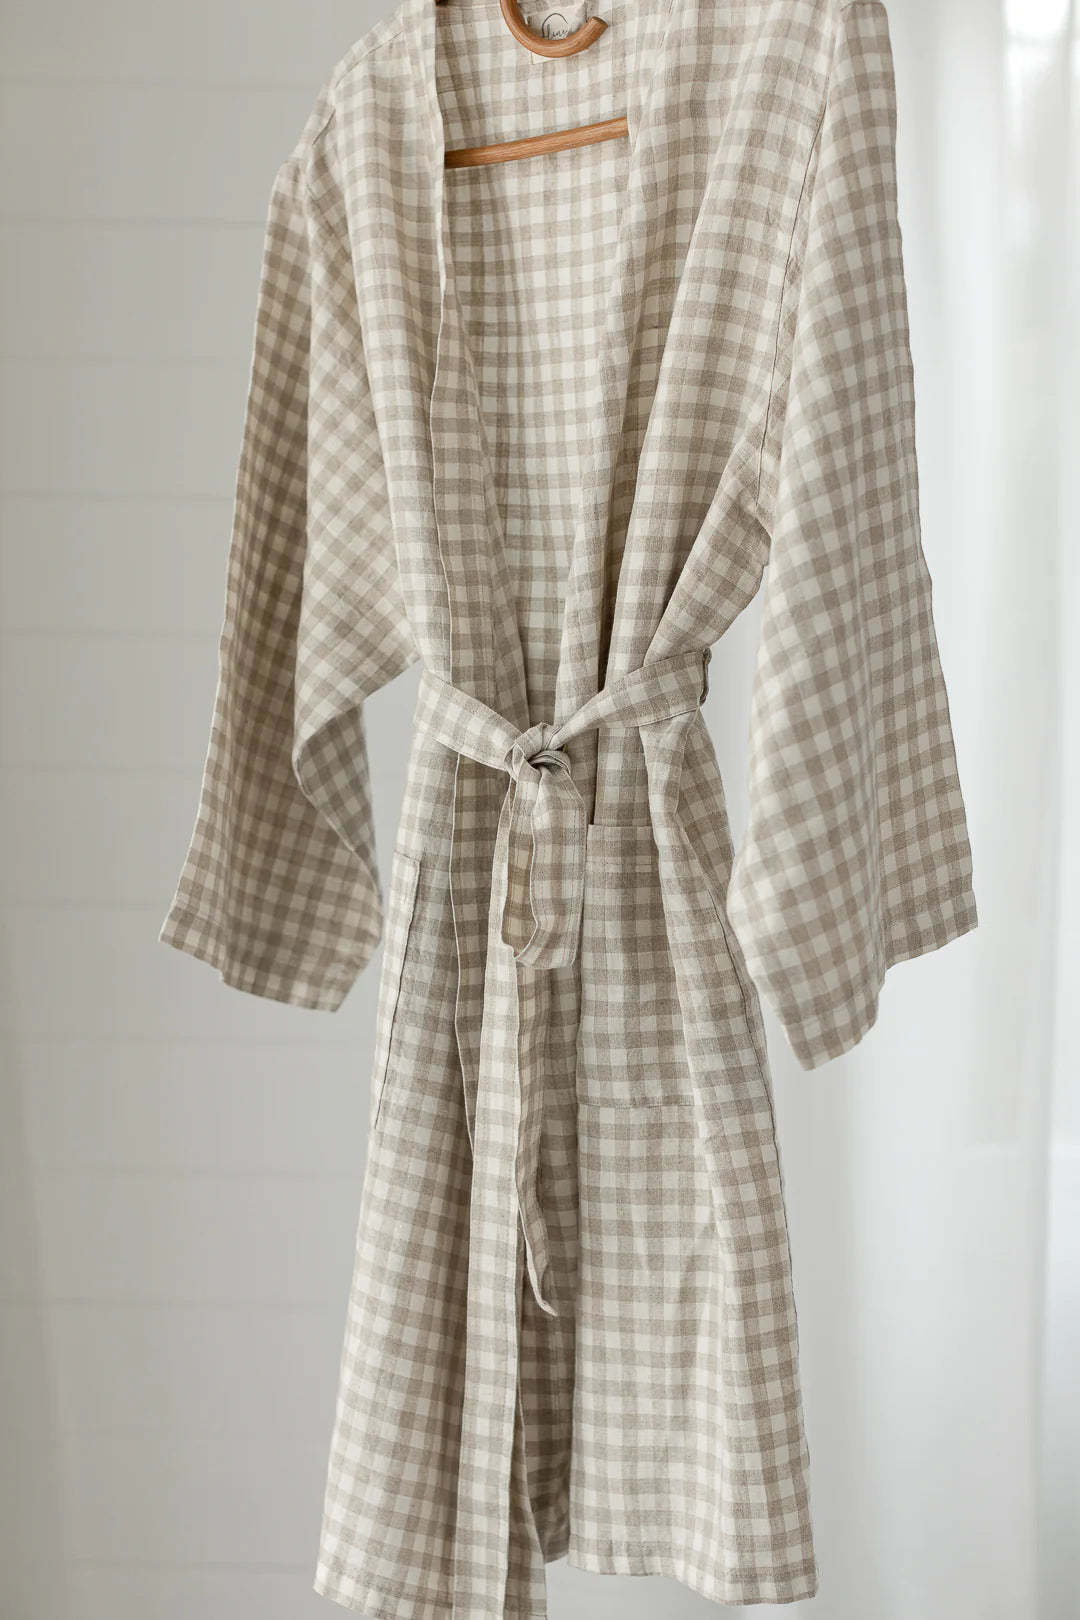 French Linen Robe - Oat Gingham